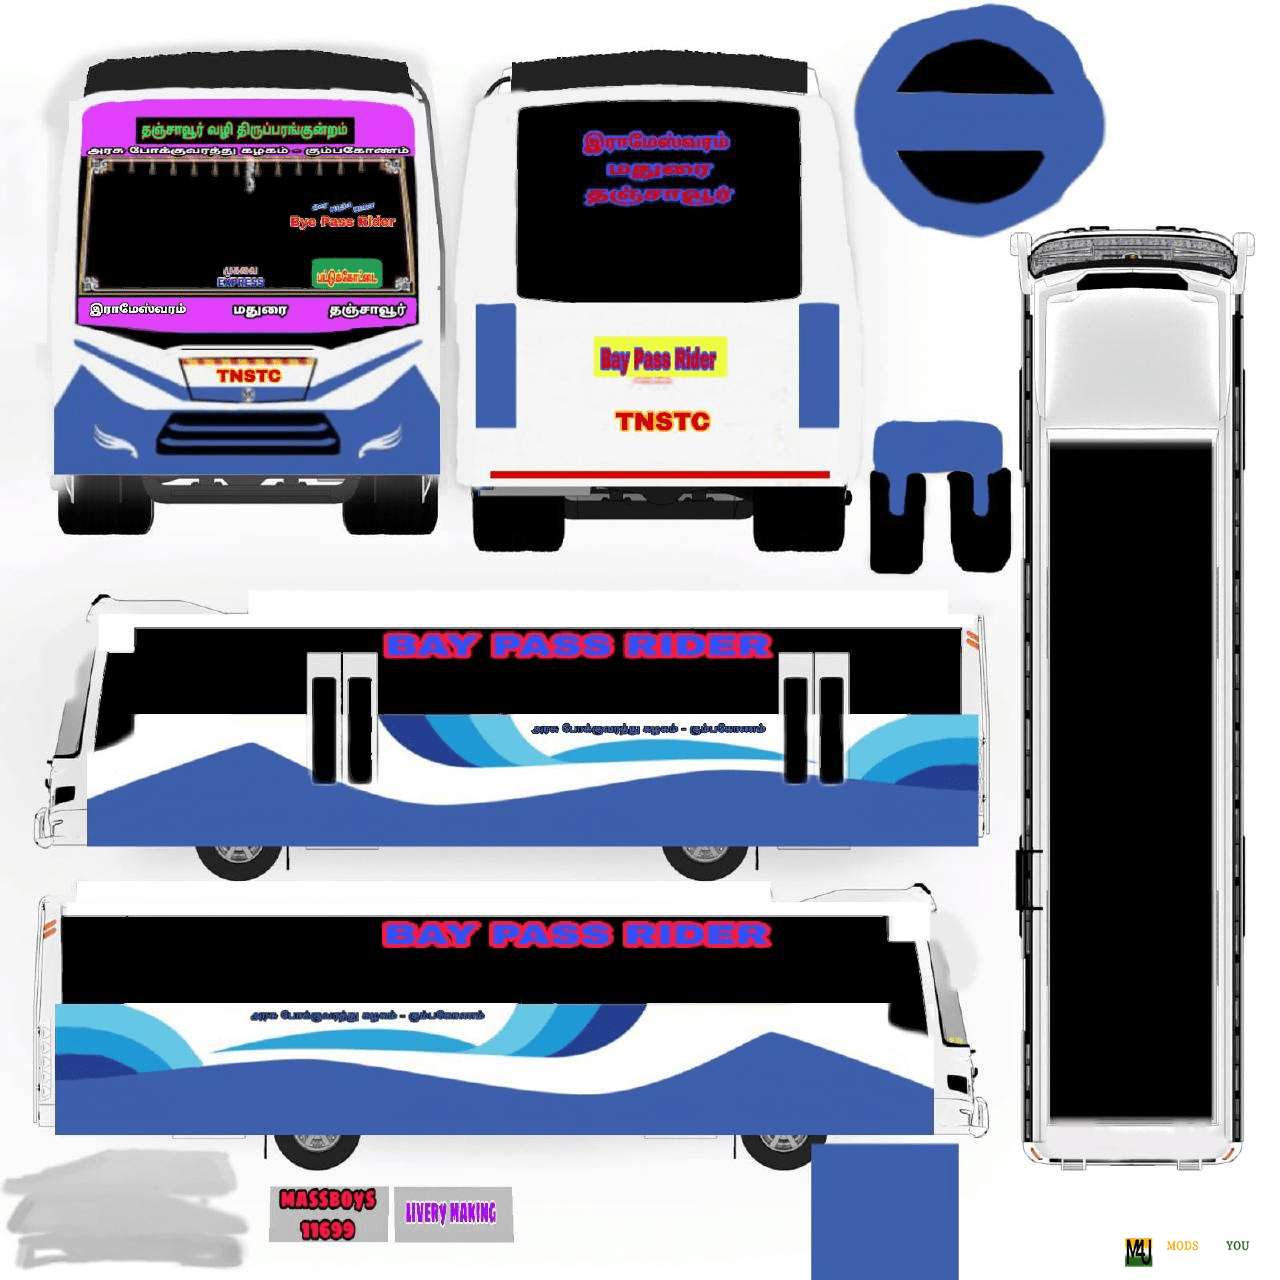 TNSTC Bus livery Atal v3